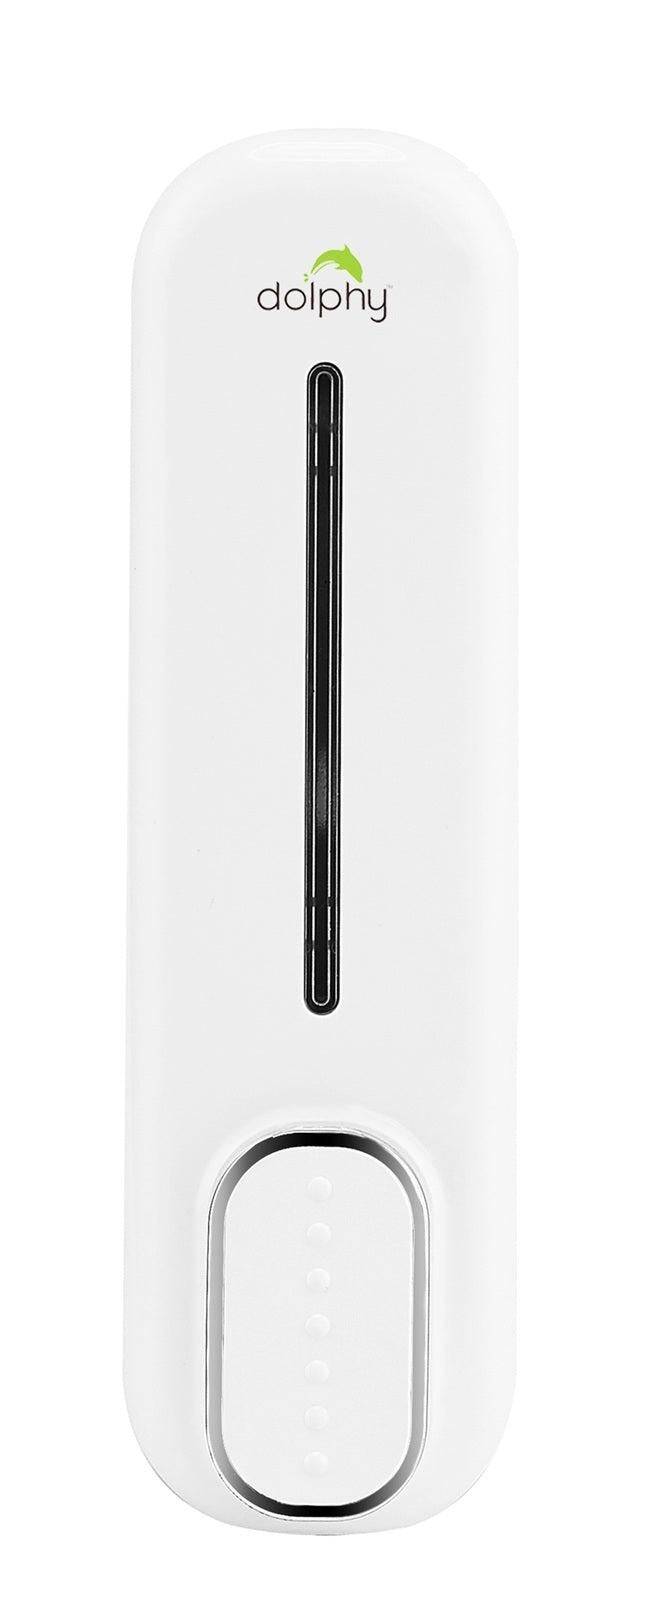 Dolphy 300ml Soap Dispenser White - Sydney Home Centre